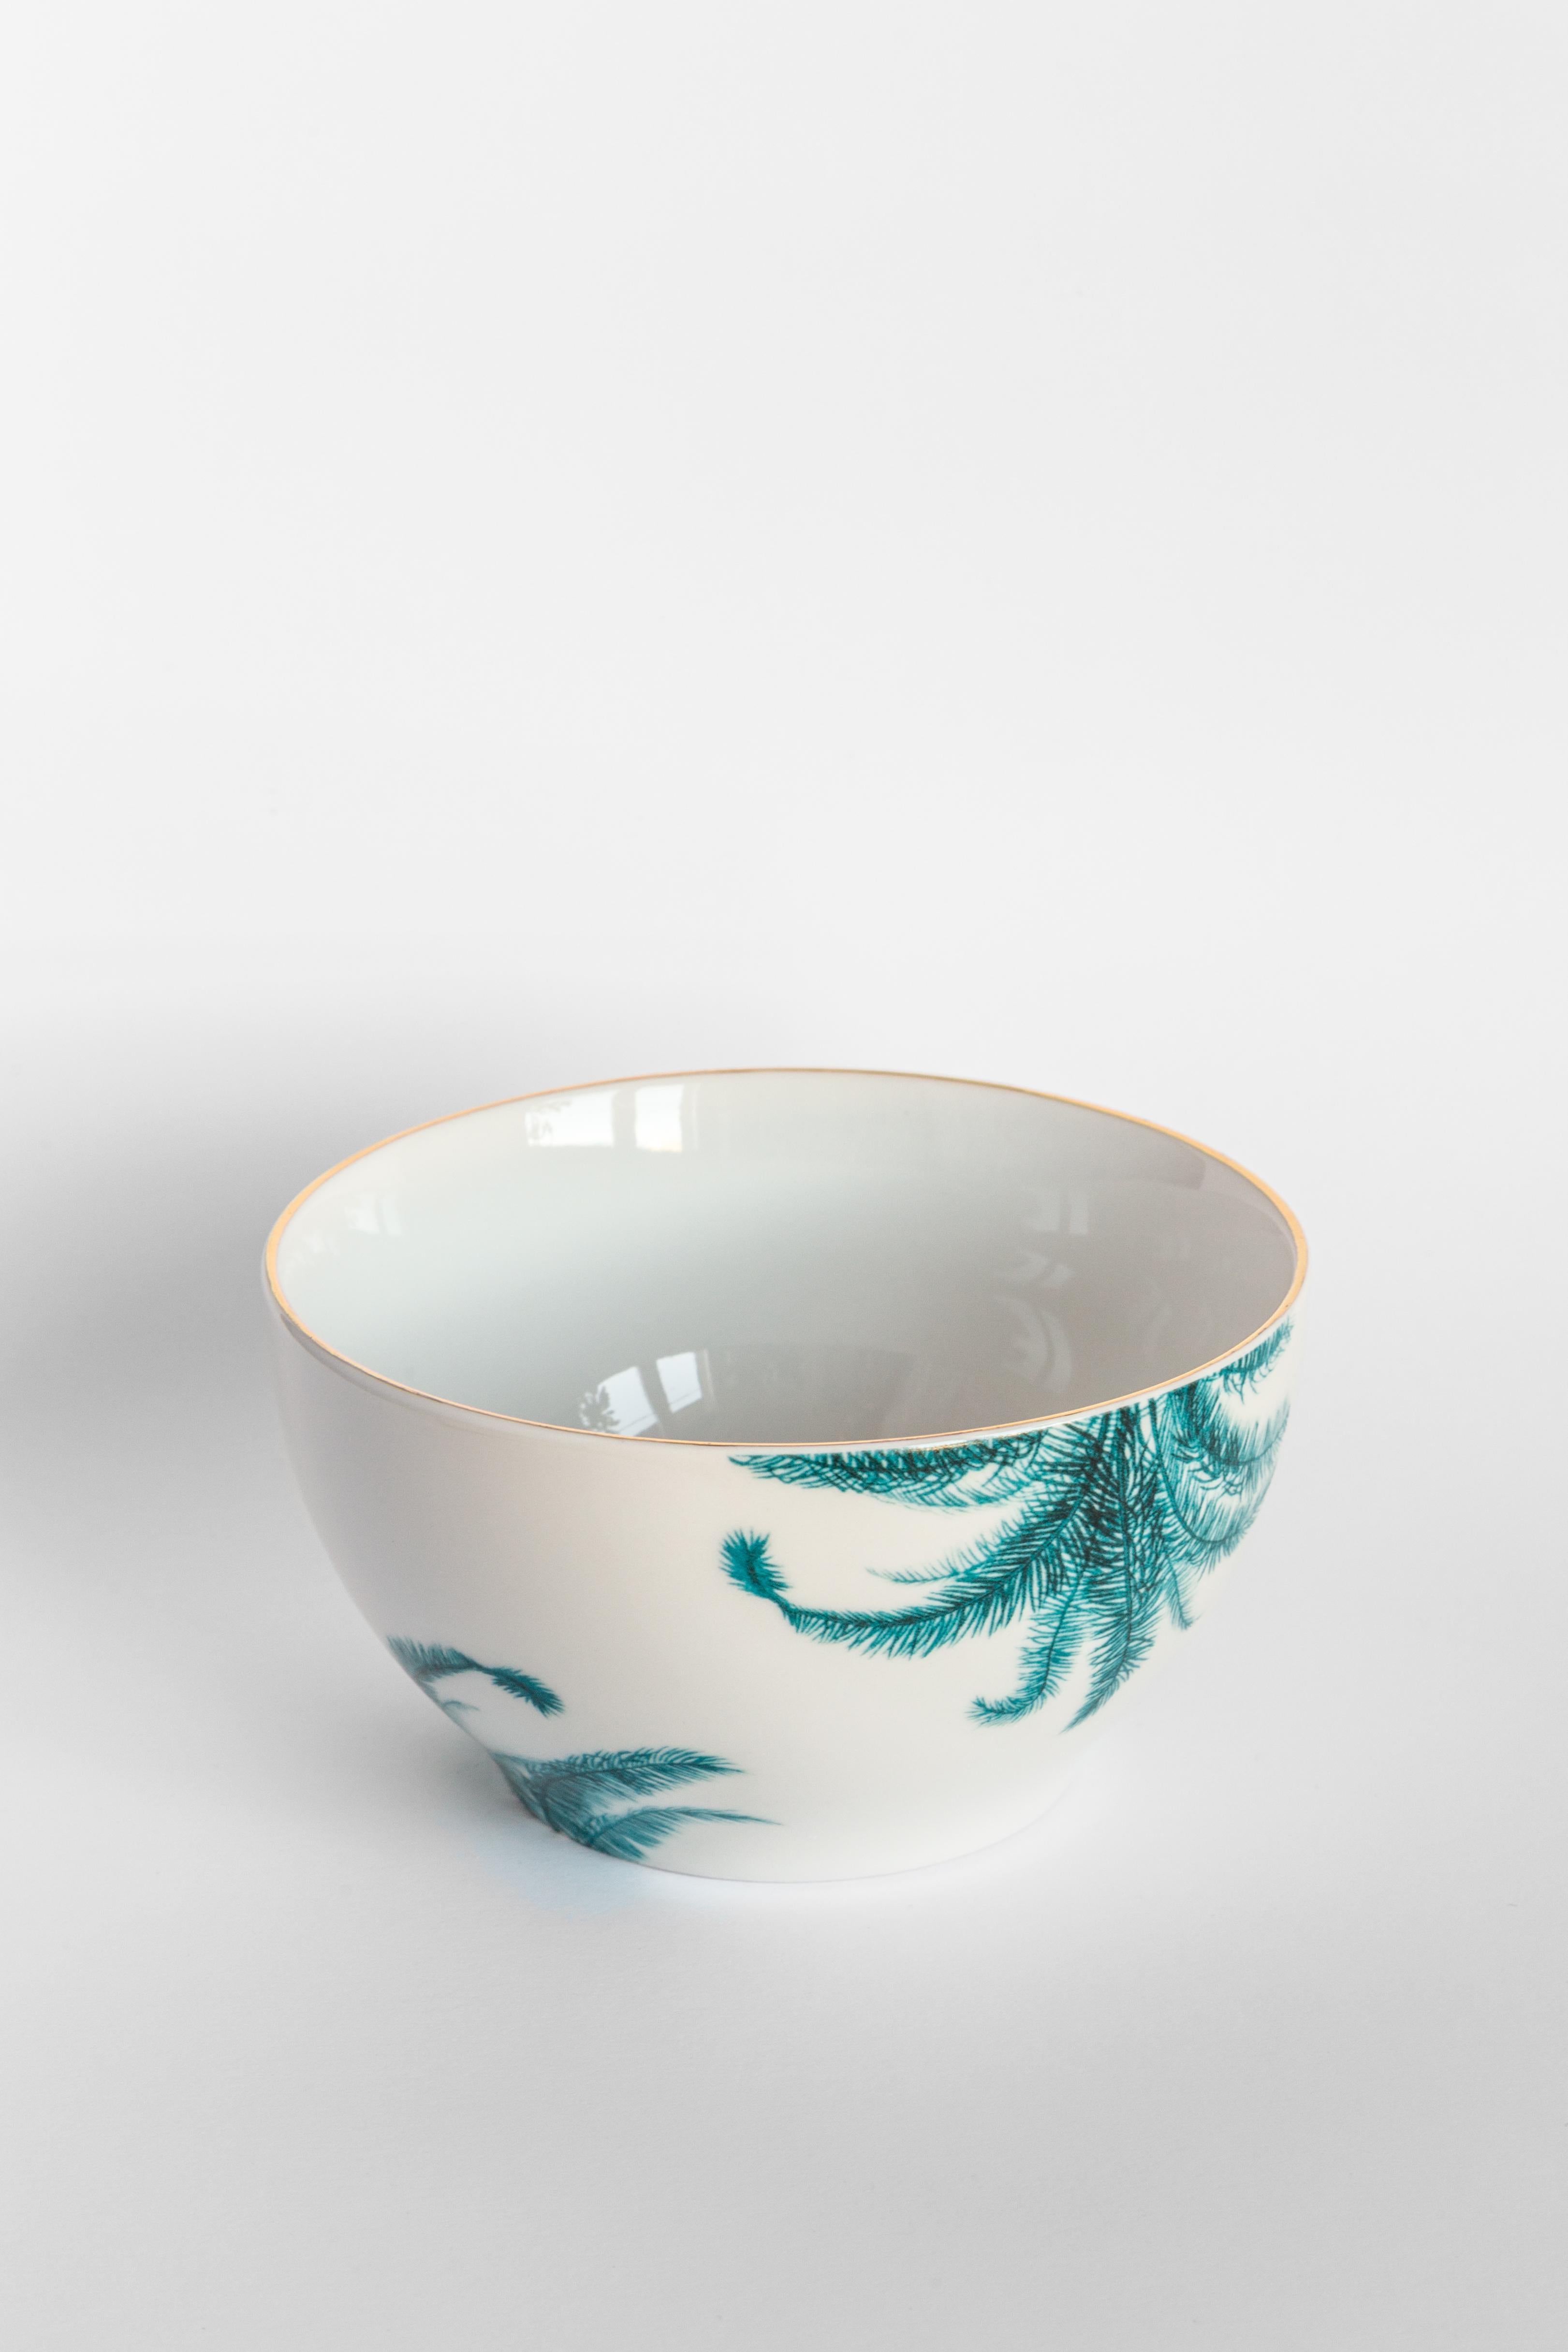 Las Palmas, Six Contemporary Porcelain Bowls with Decorative Design For Sale 1